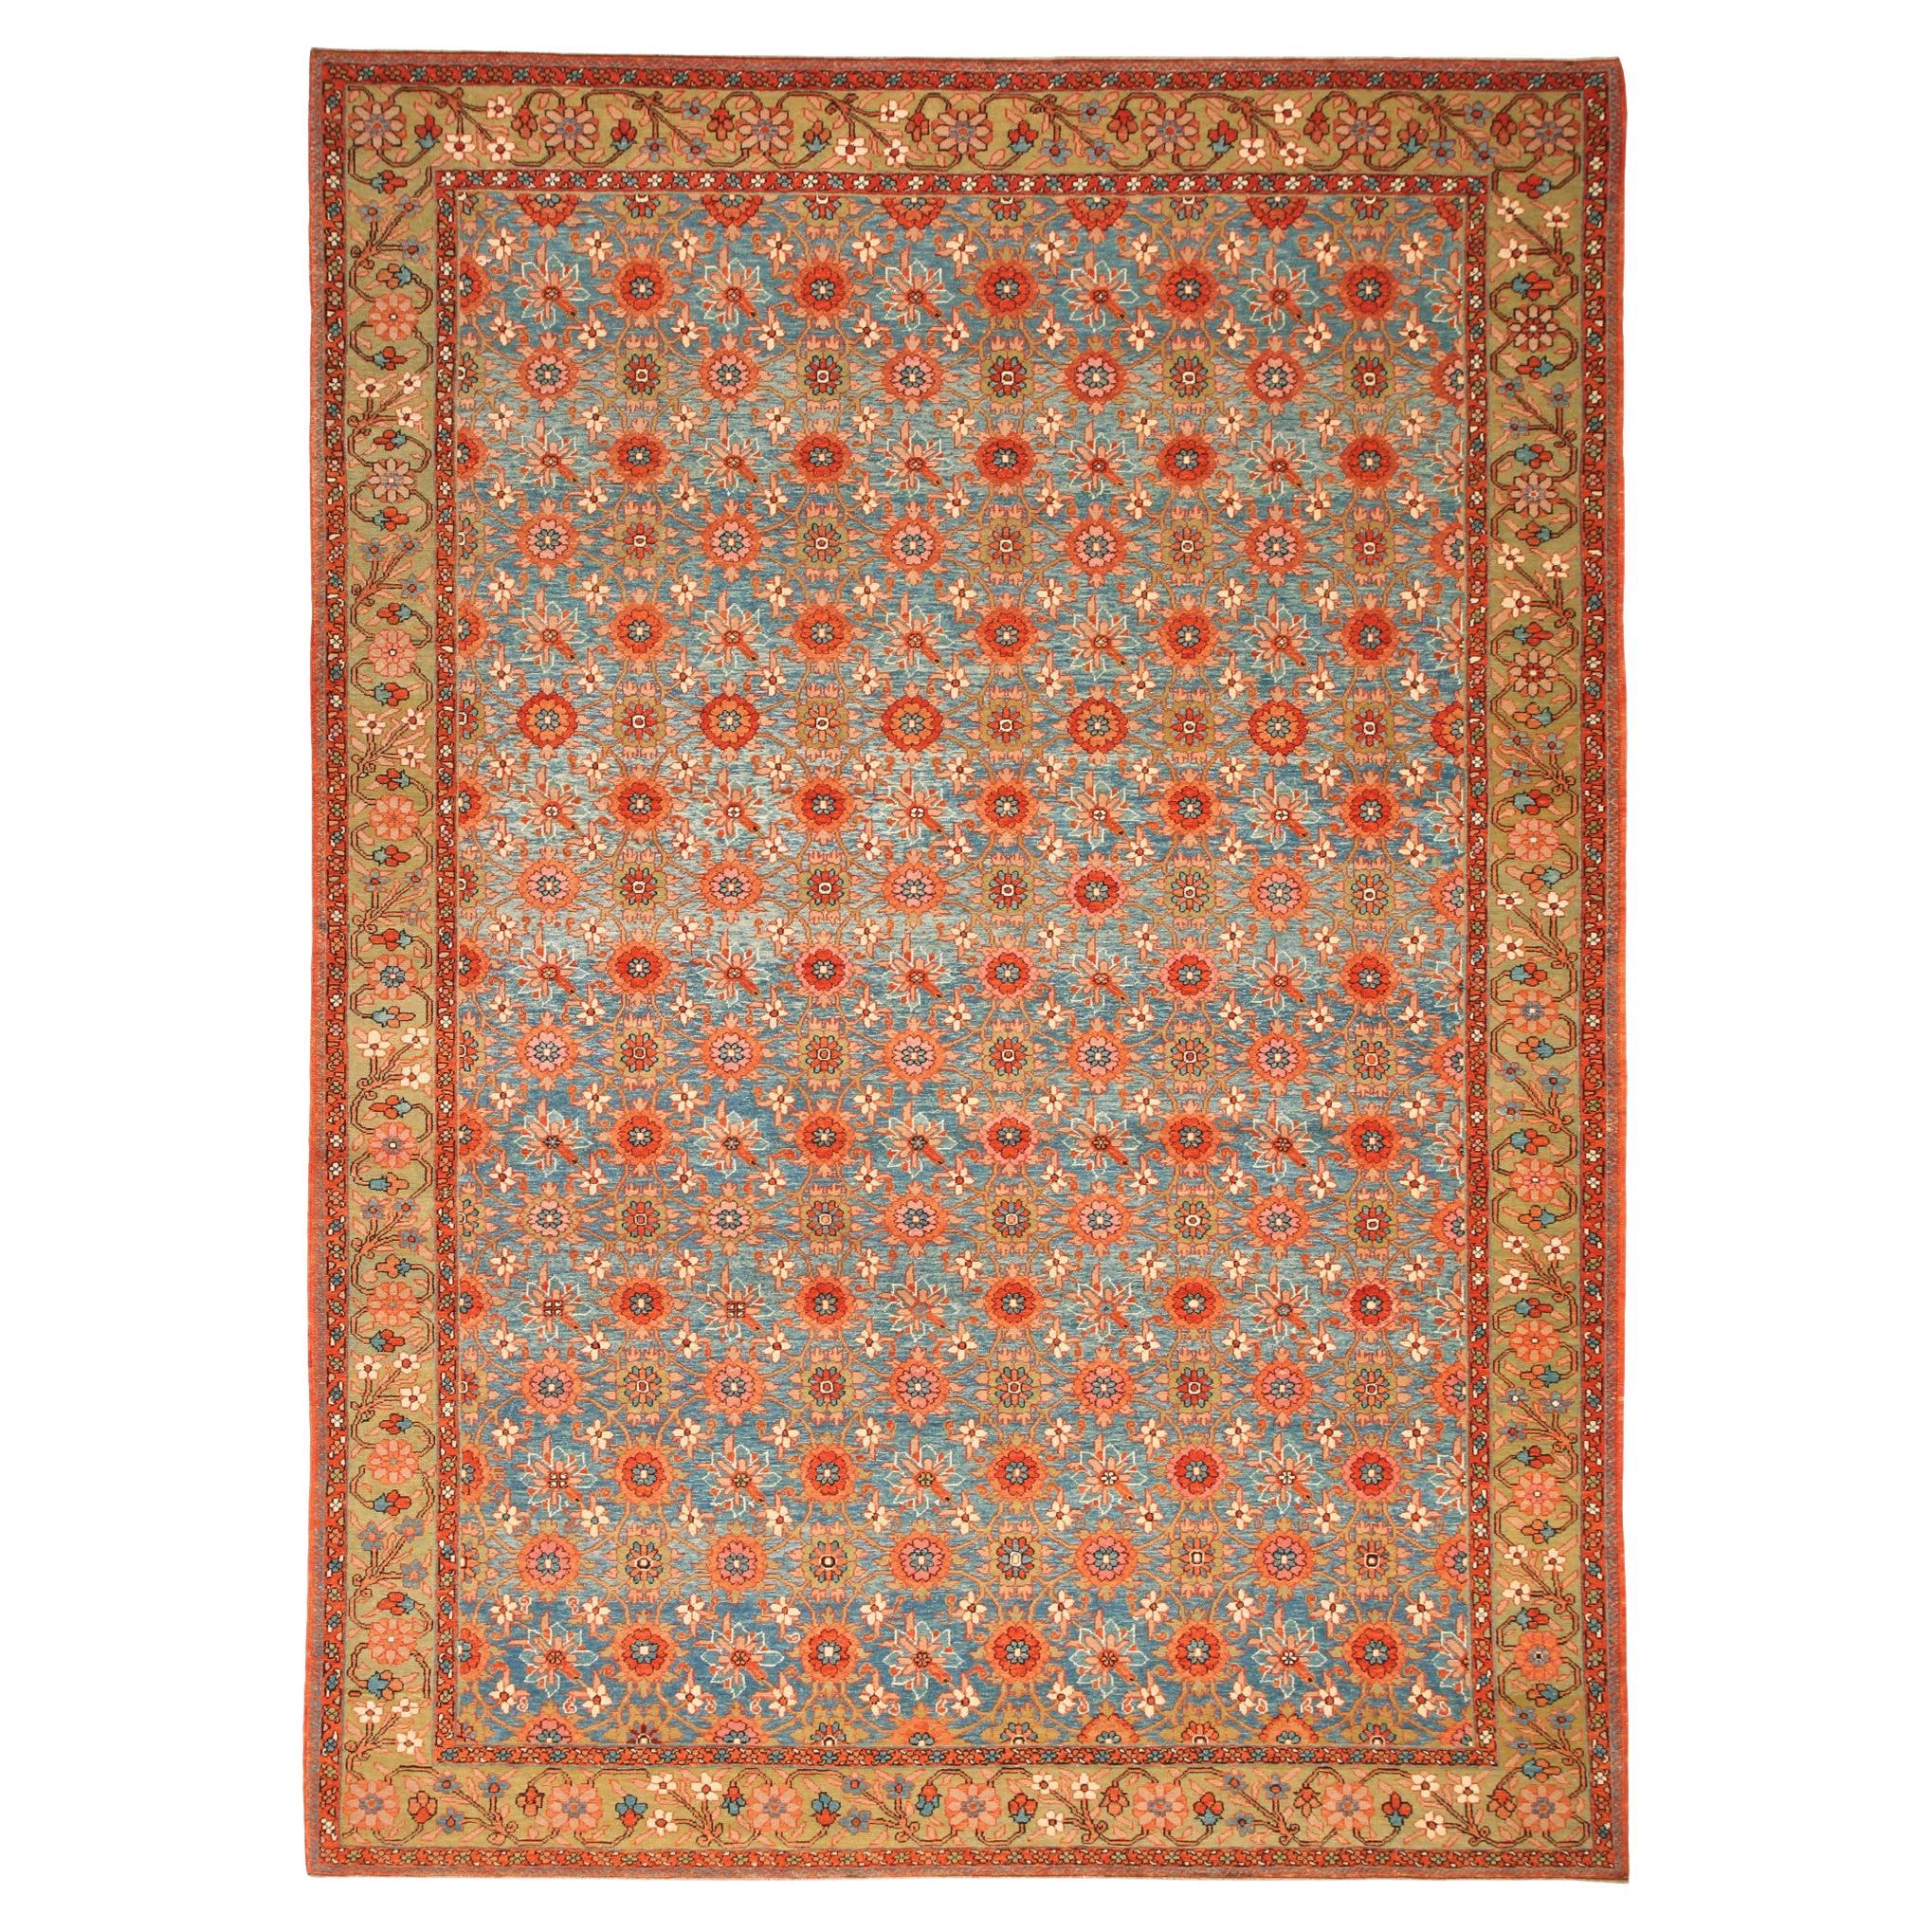 Ararat-Teppich Mina Khani, Teppich im persischen Stil des 19. Jahrhunderts, natürlich gefärbt